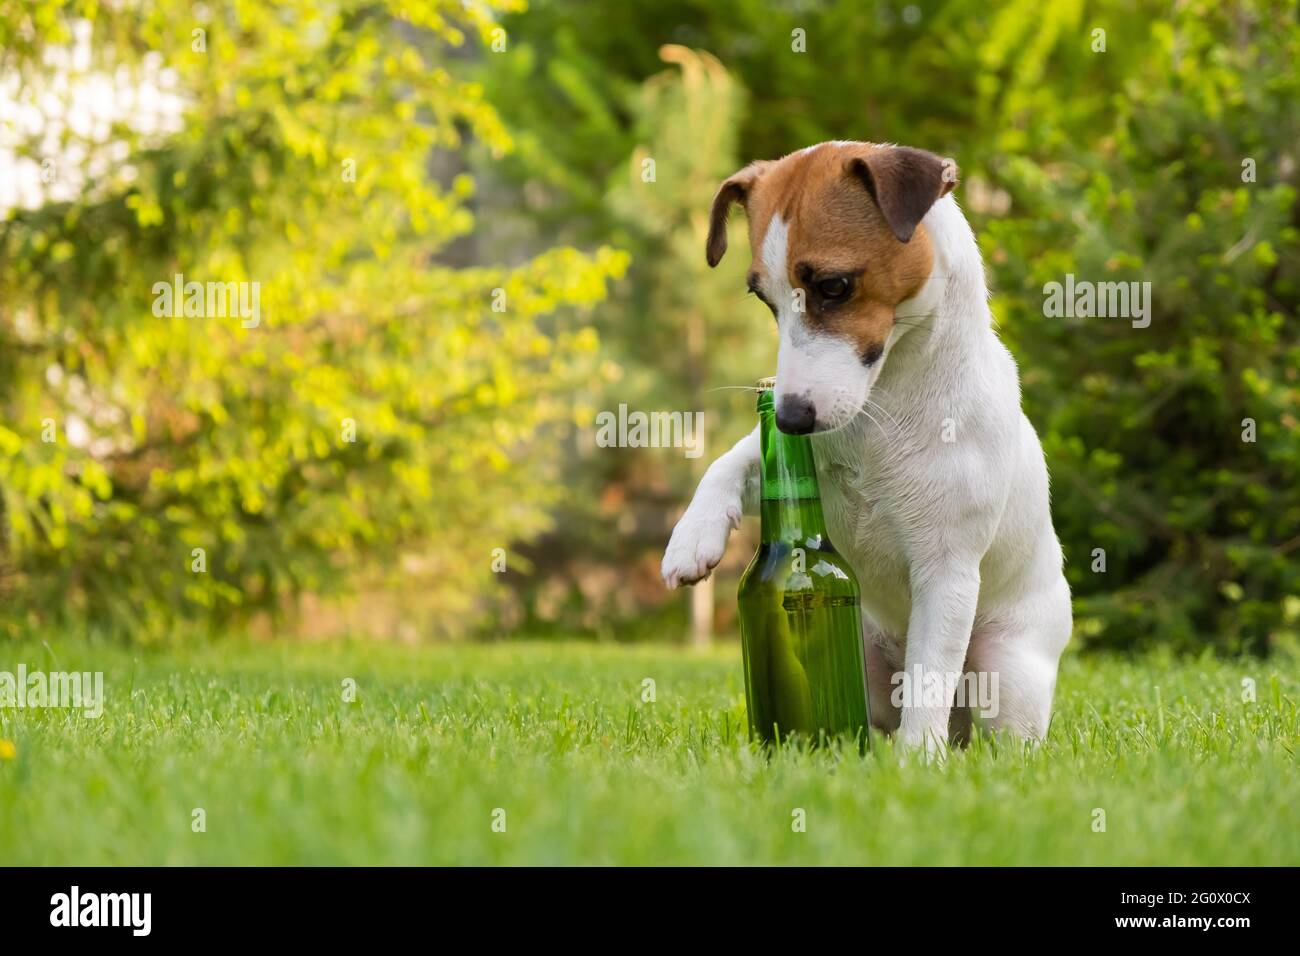 Perros + Cervezas = Humanos felices: Boozehounds es un parque